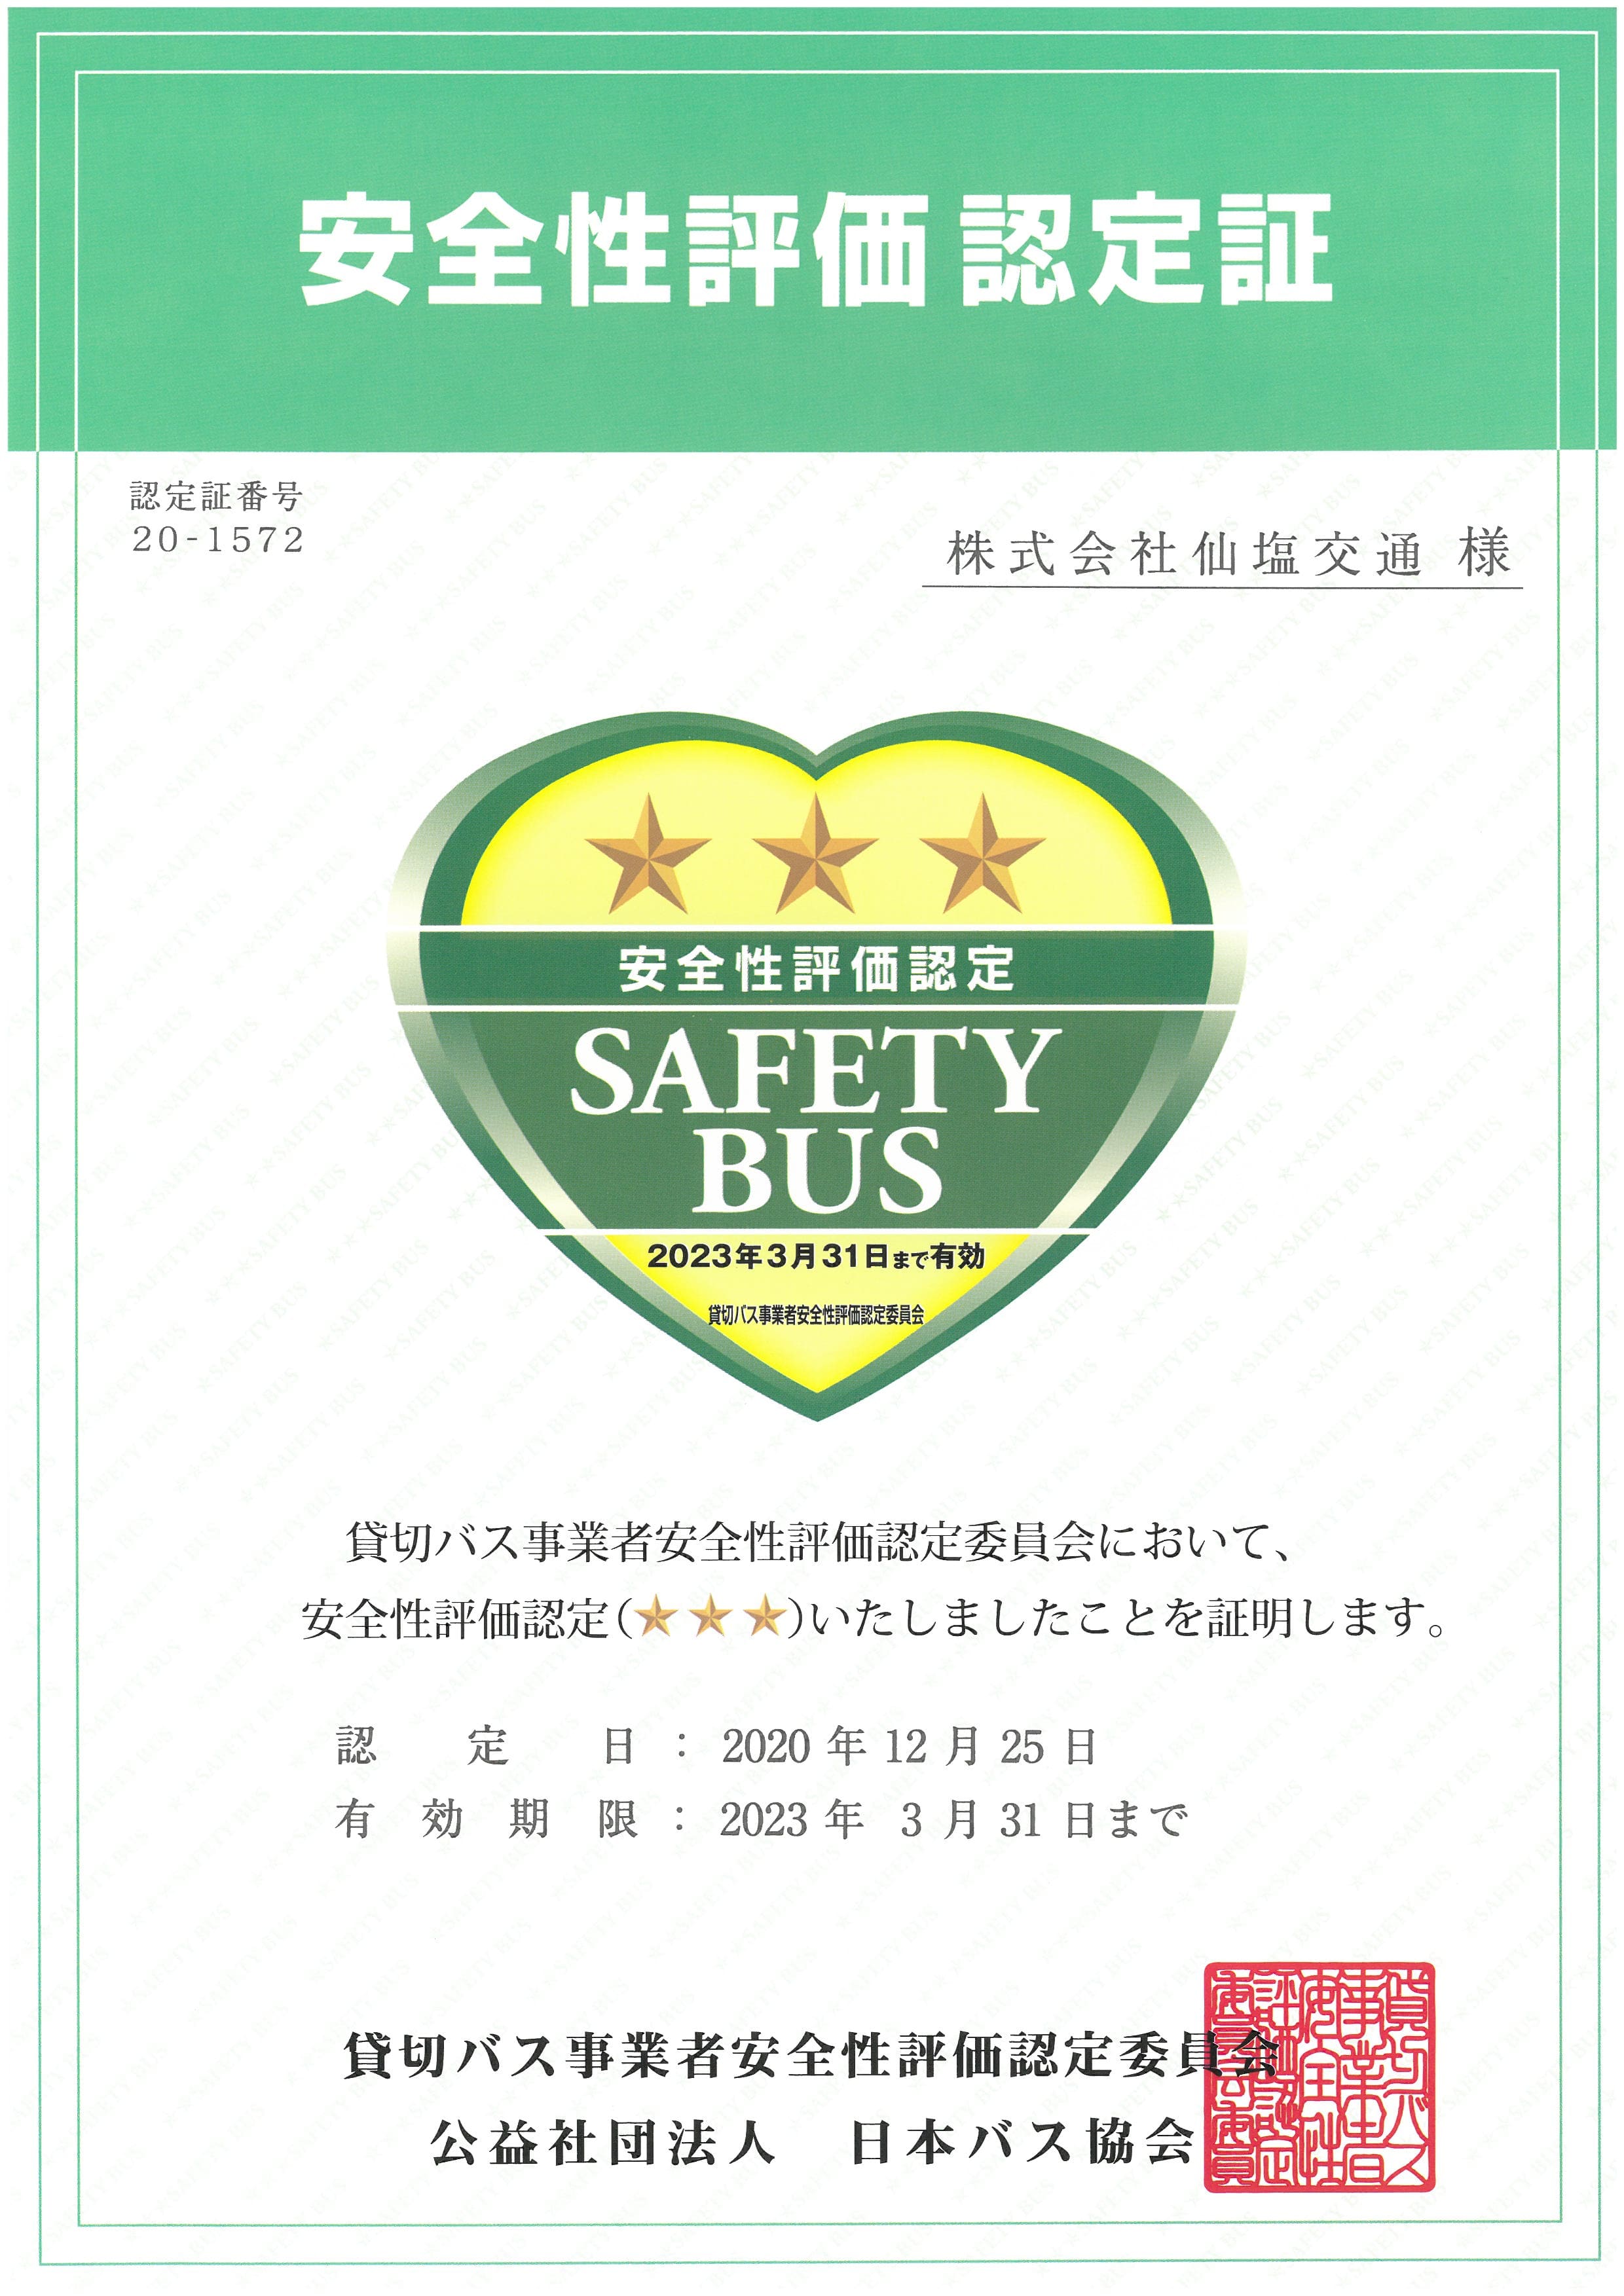 貸切バス事業者安全性評価認定委員会において、安全性評価認定(☆☆☆)の評価をいただきました。